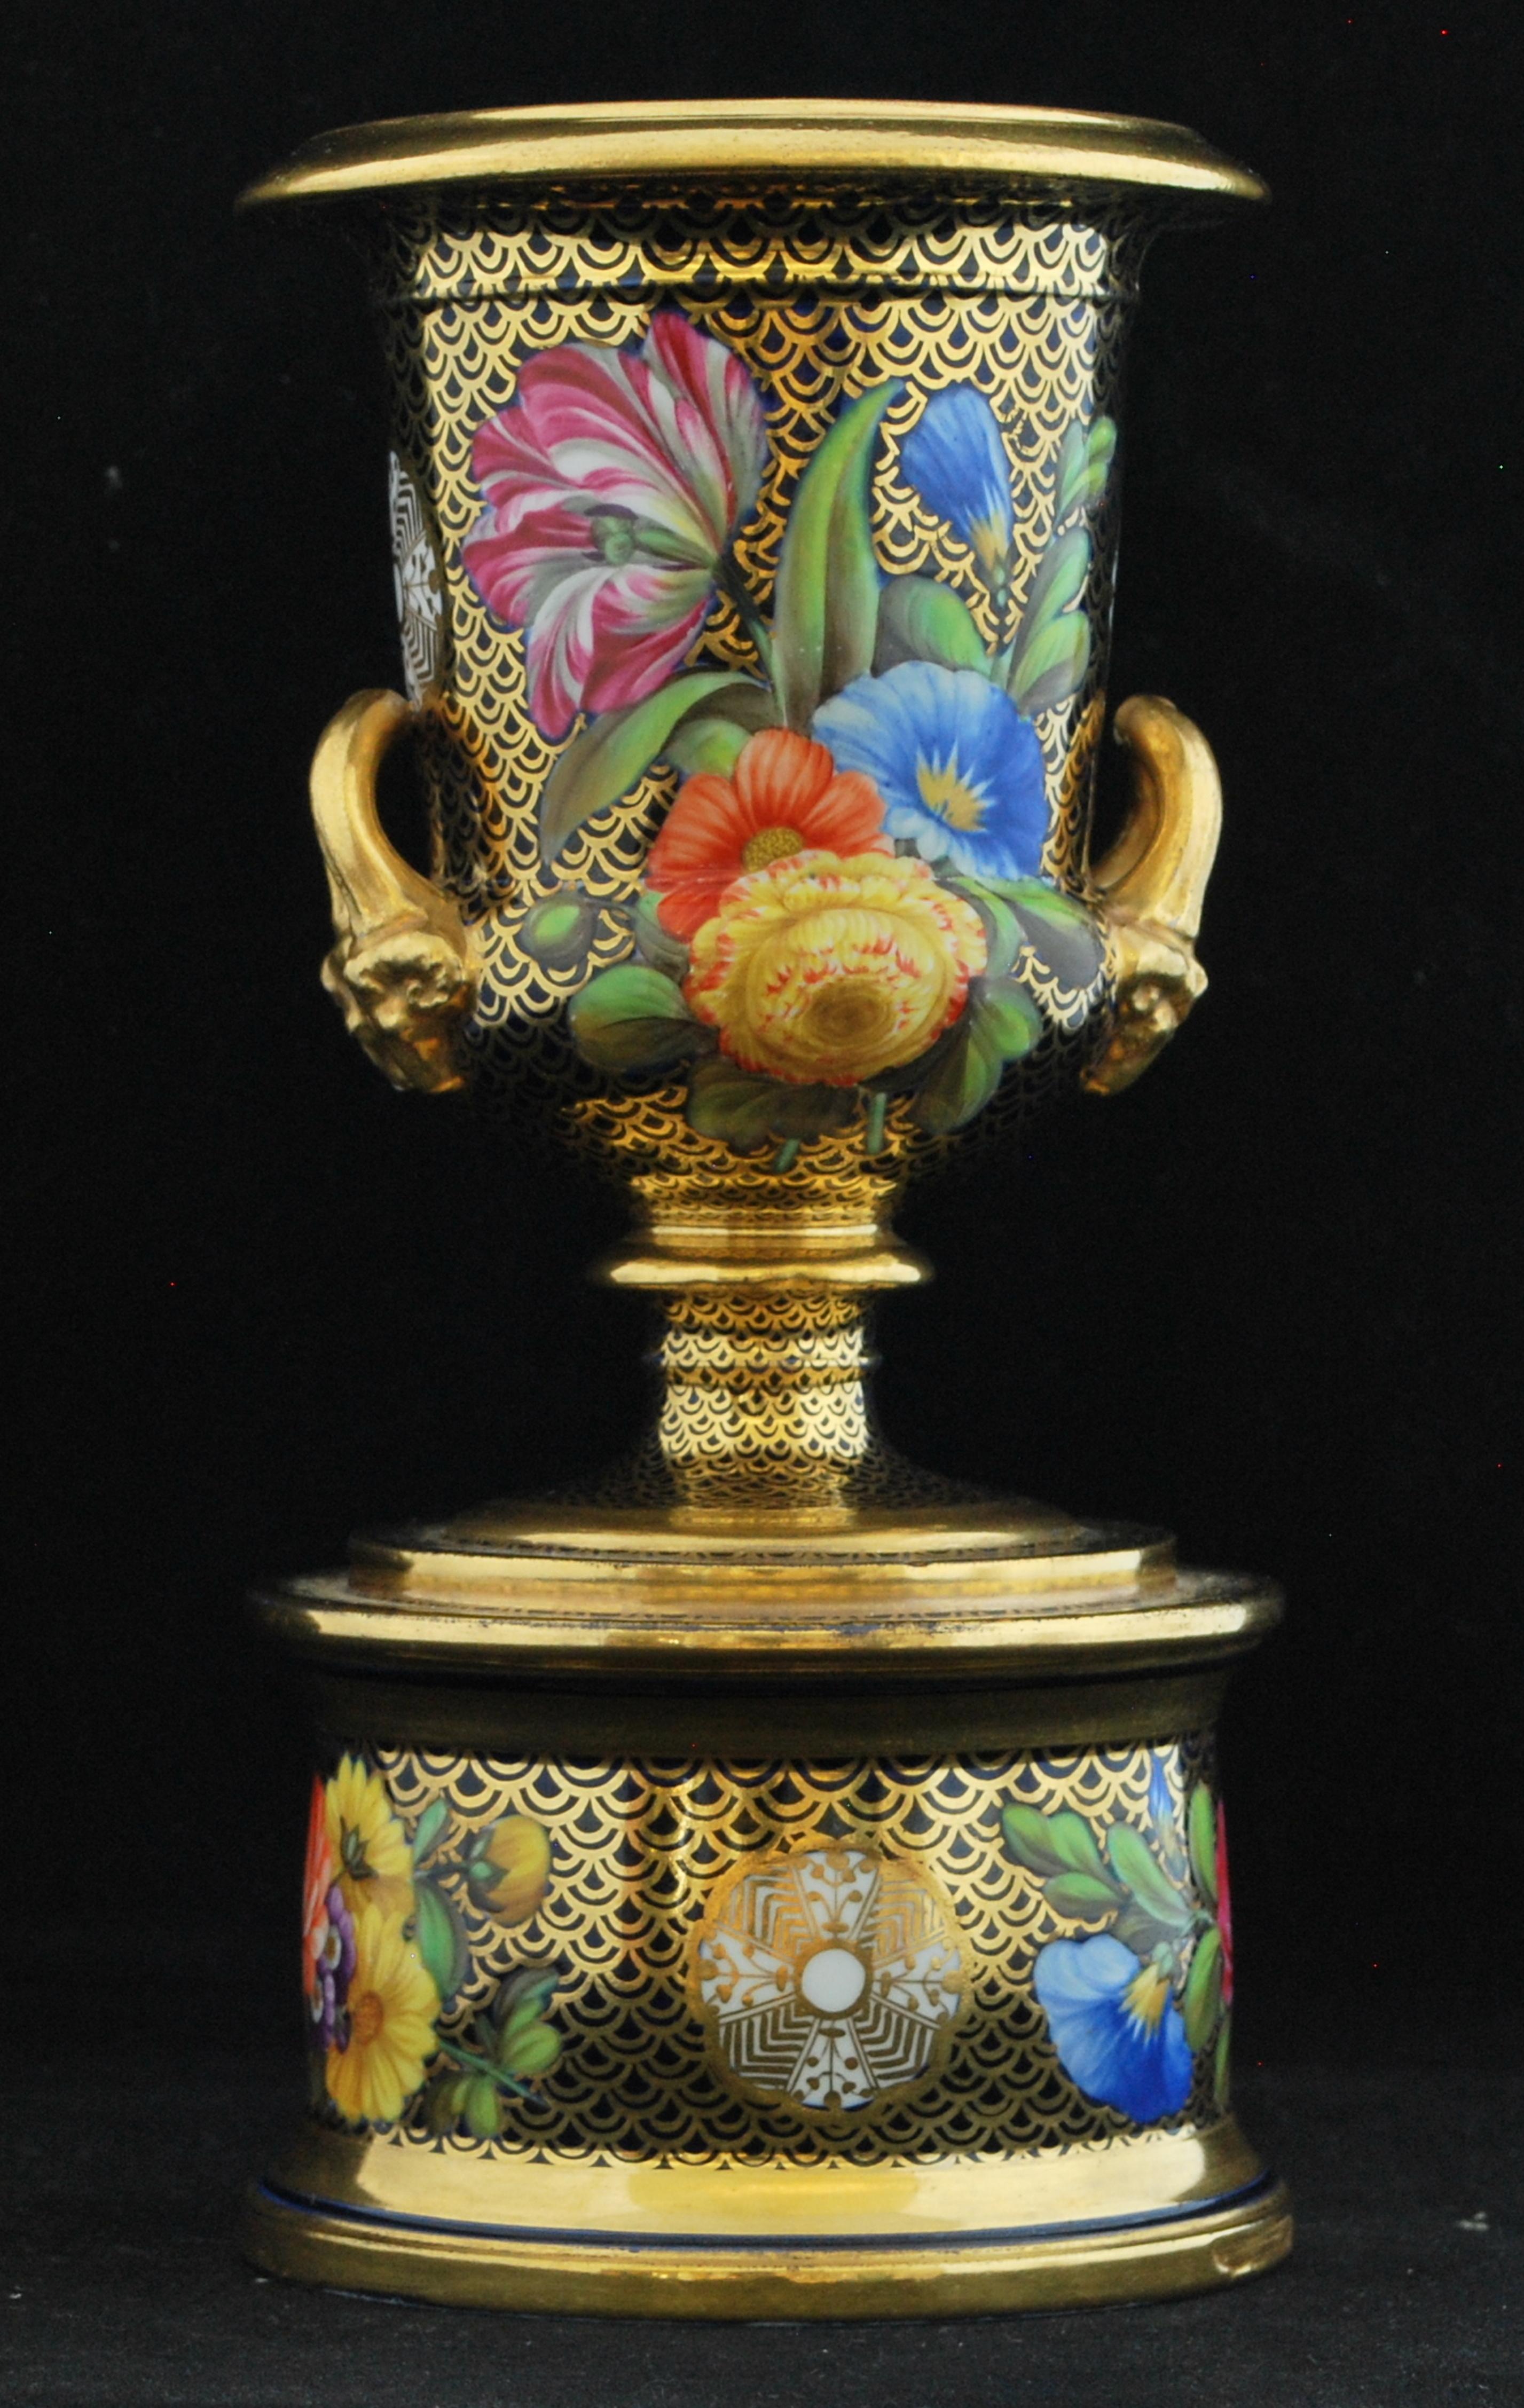 Klassisch trifft auf Regency: Eine Miniatur-Campana-Vase, verziert mit dem Muster 1166. Dieses Muster hat trotz seiner anhaltenden Beliebtheit nie einen allgemeinen Namen erhalten, vielleicht wegen der zahlreichen Variationen.

Die Blumenmalerei